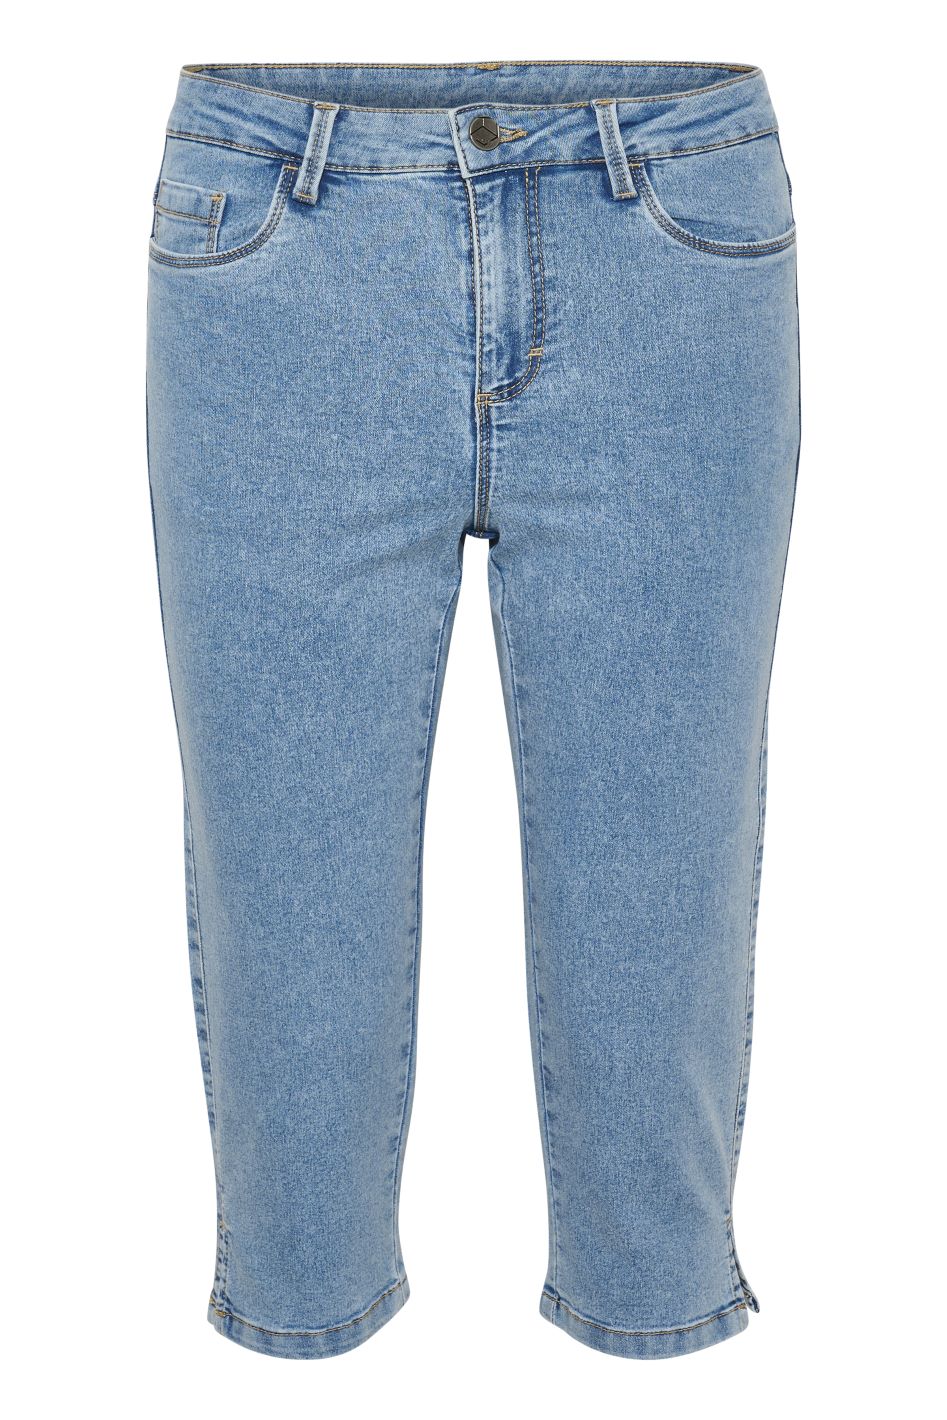 Vicky Capri Jeans Light Blue Washe